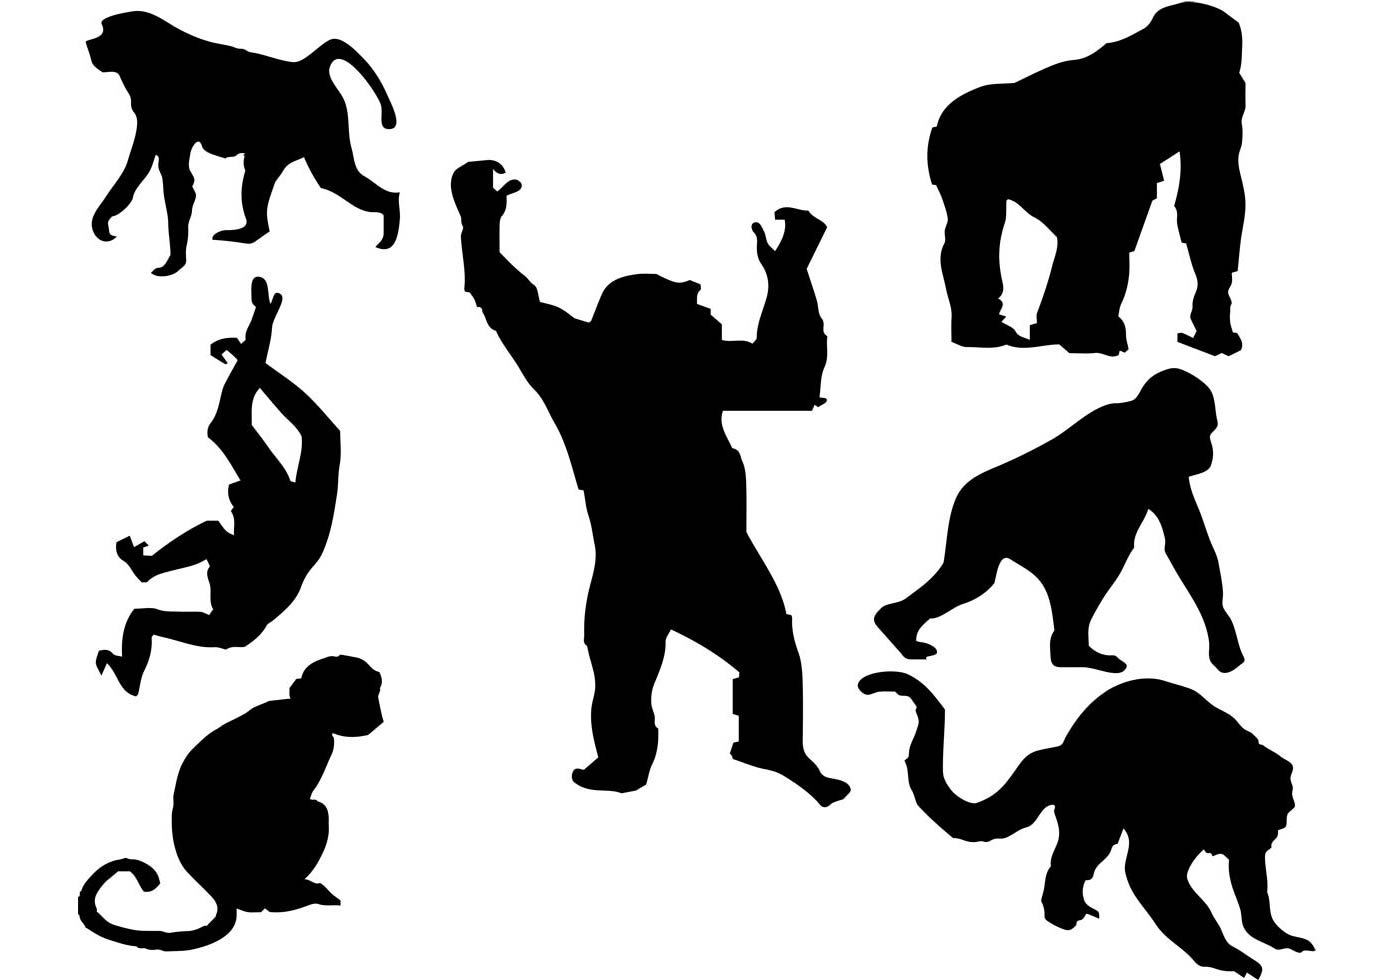 Приматы - Primates - отряд плацентарных млекопитающих (обезьяны и полуобезьяны)